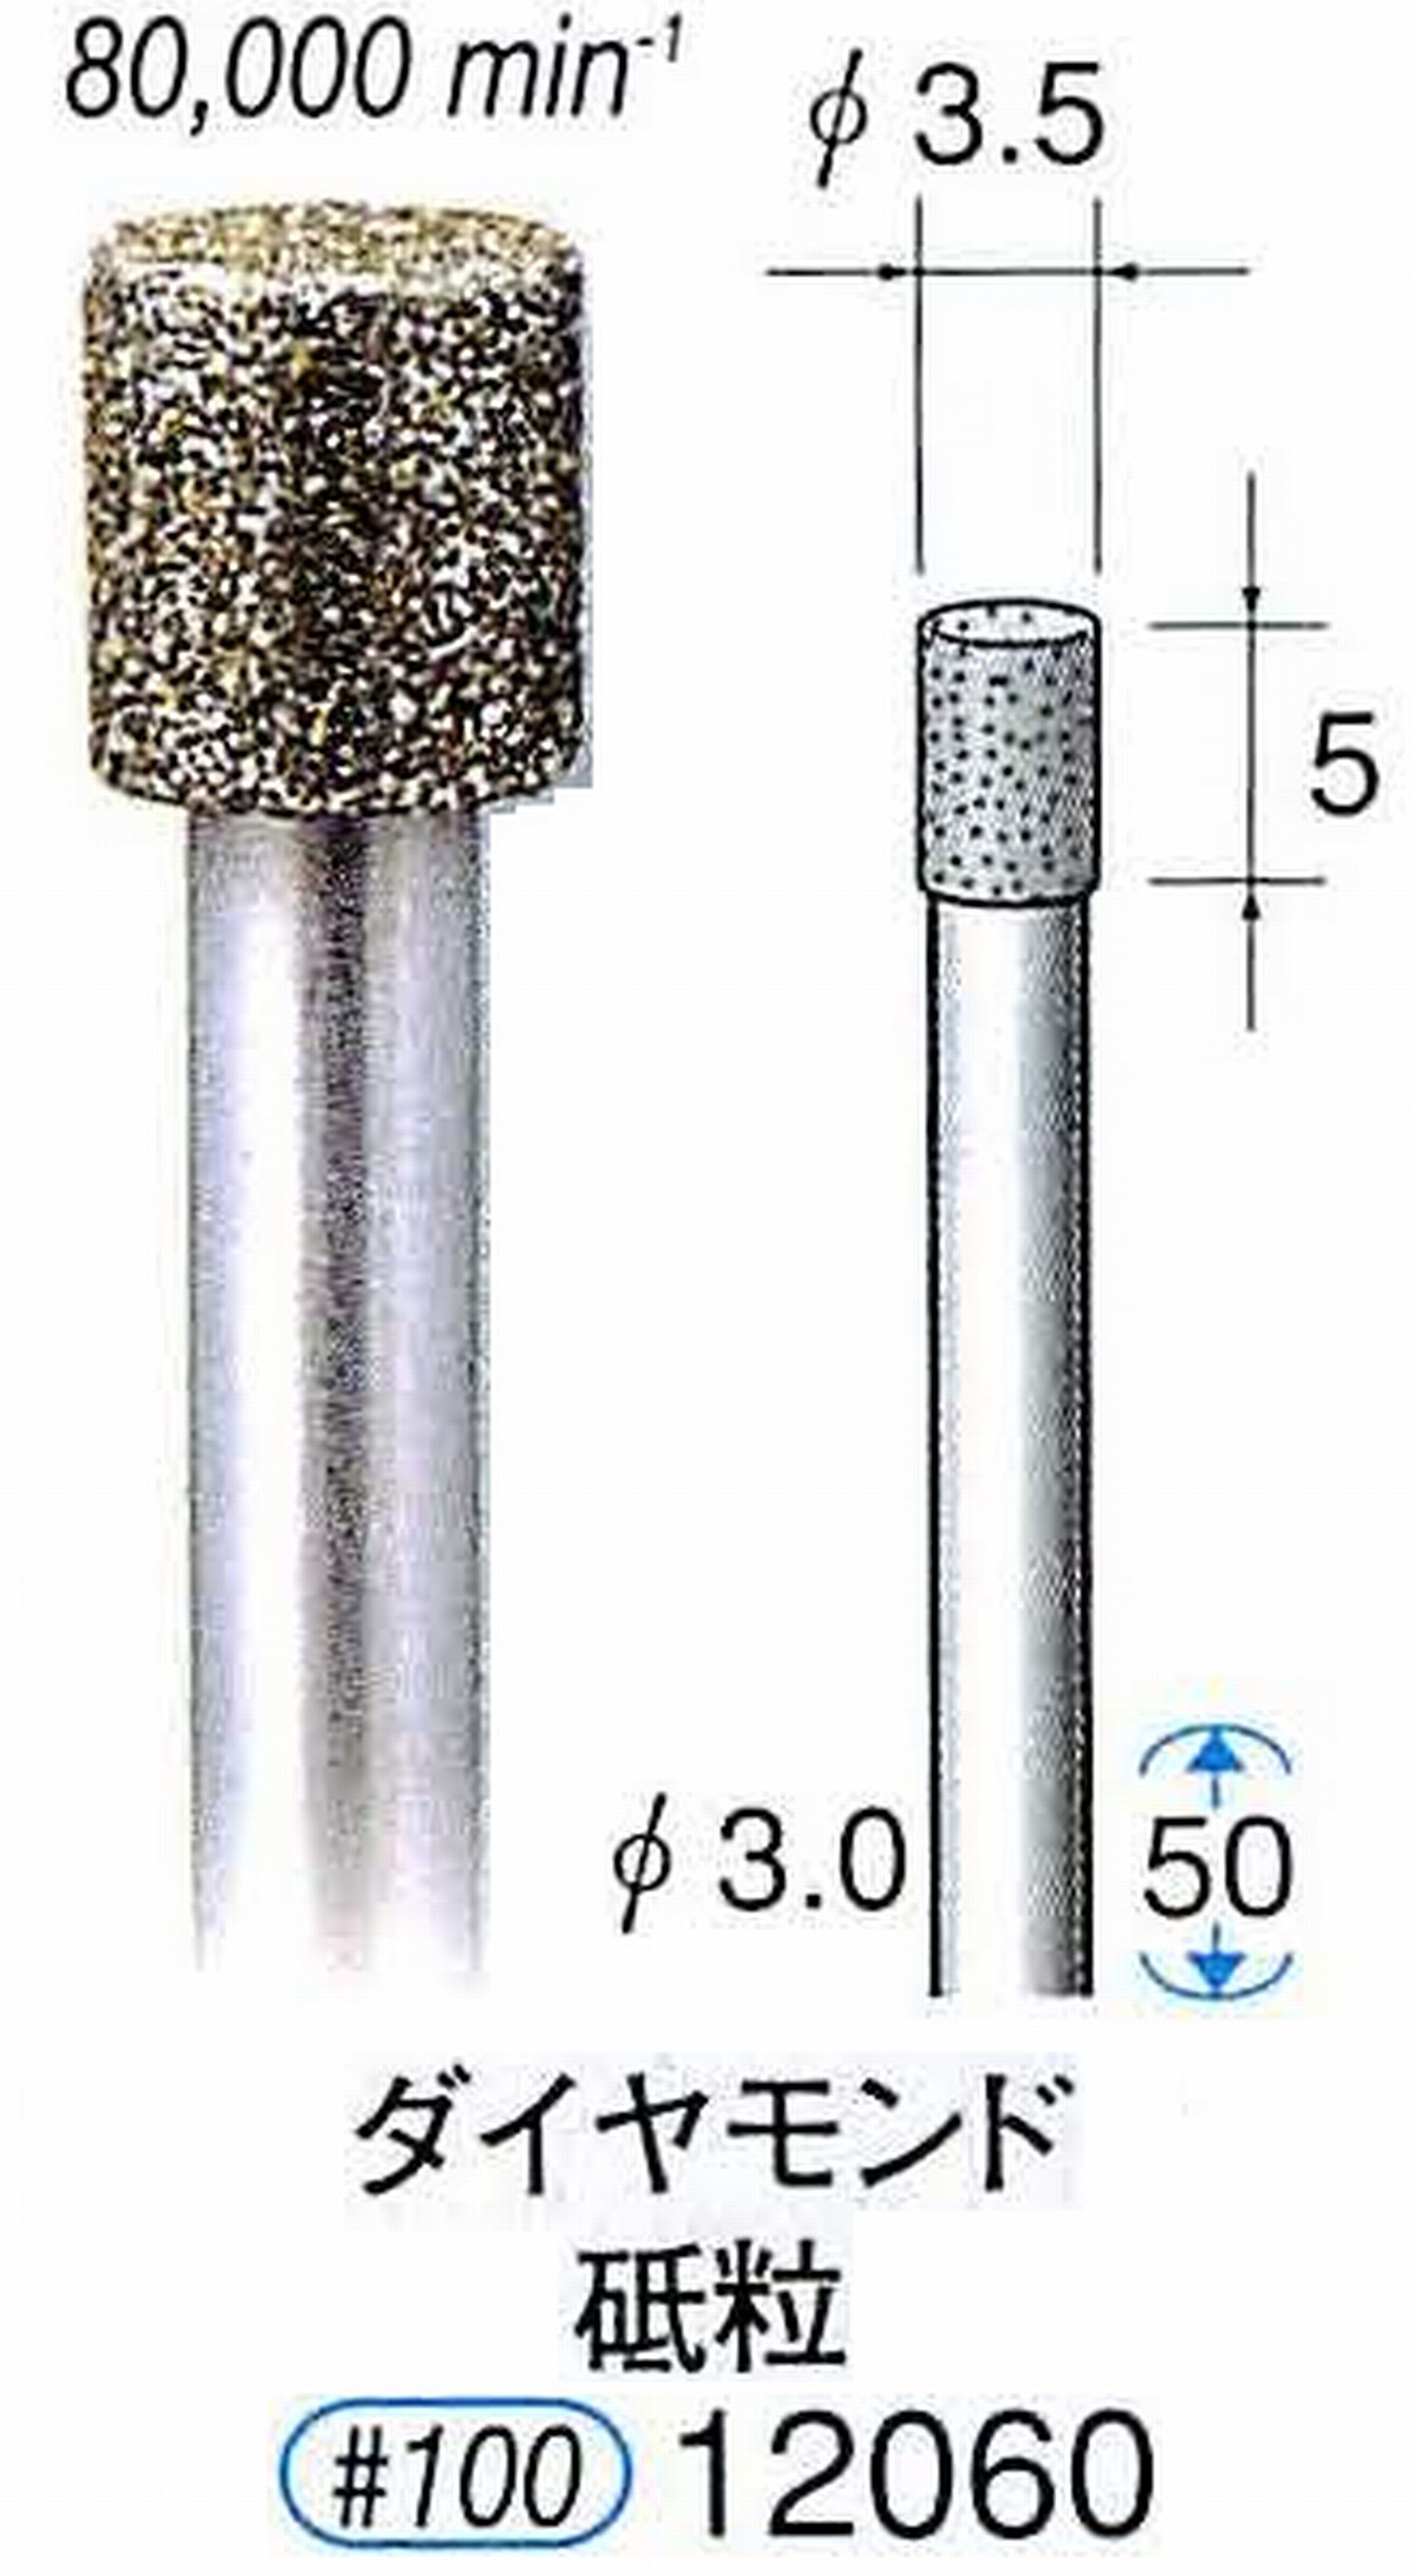 ナカニシ/NAKANISHI 電着ダイヤモンド ダイヤモンド砥粒 軸径(シャンク)φ3.0mm 12060